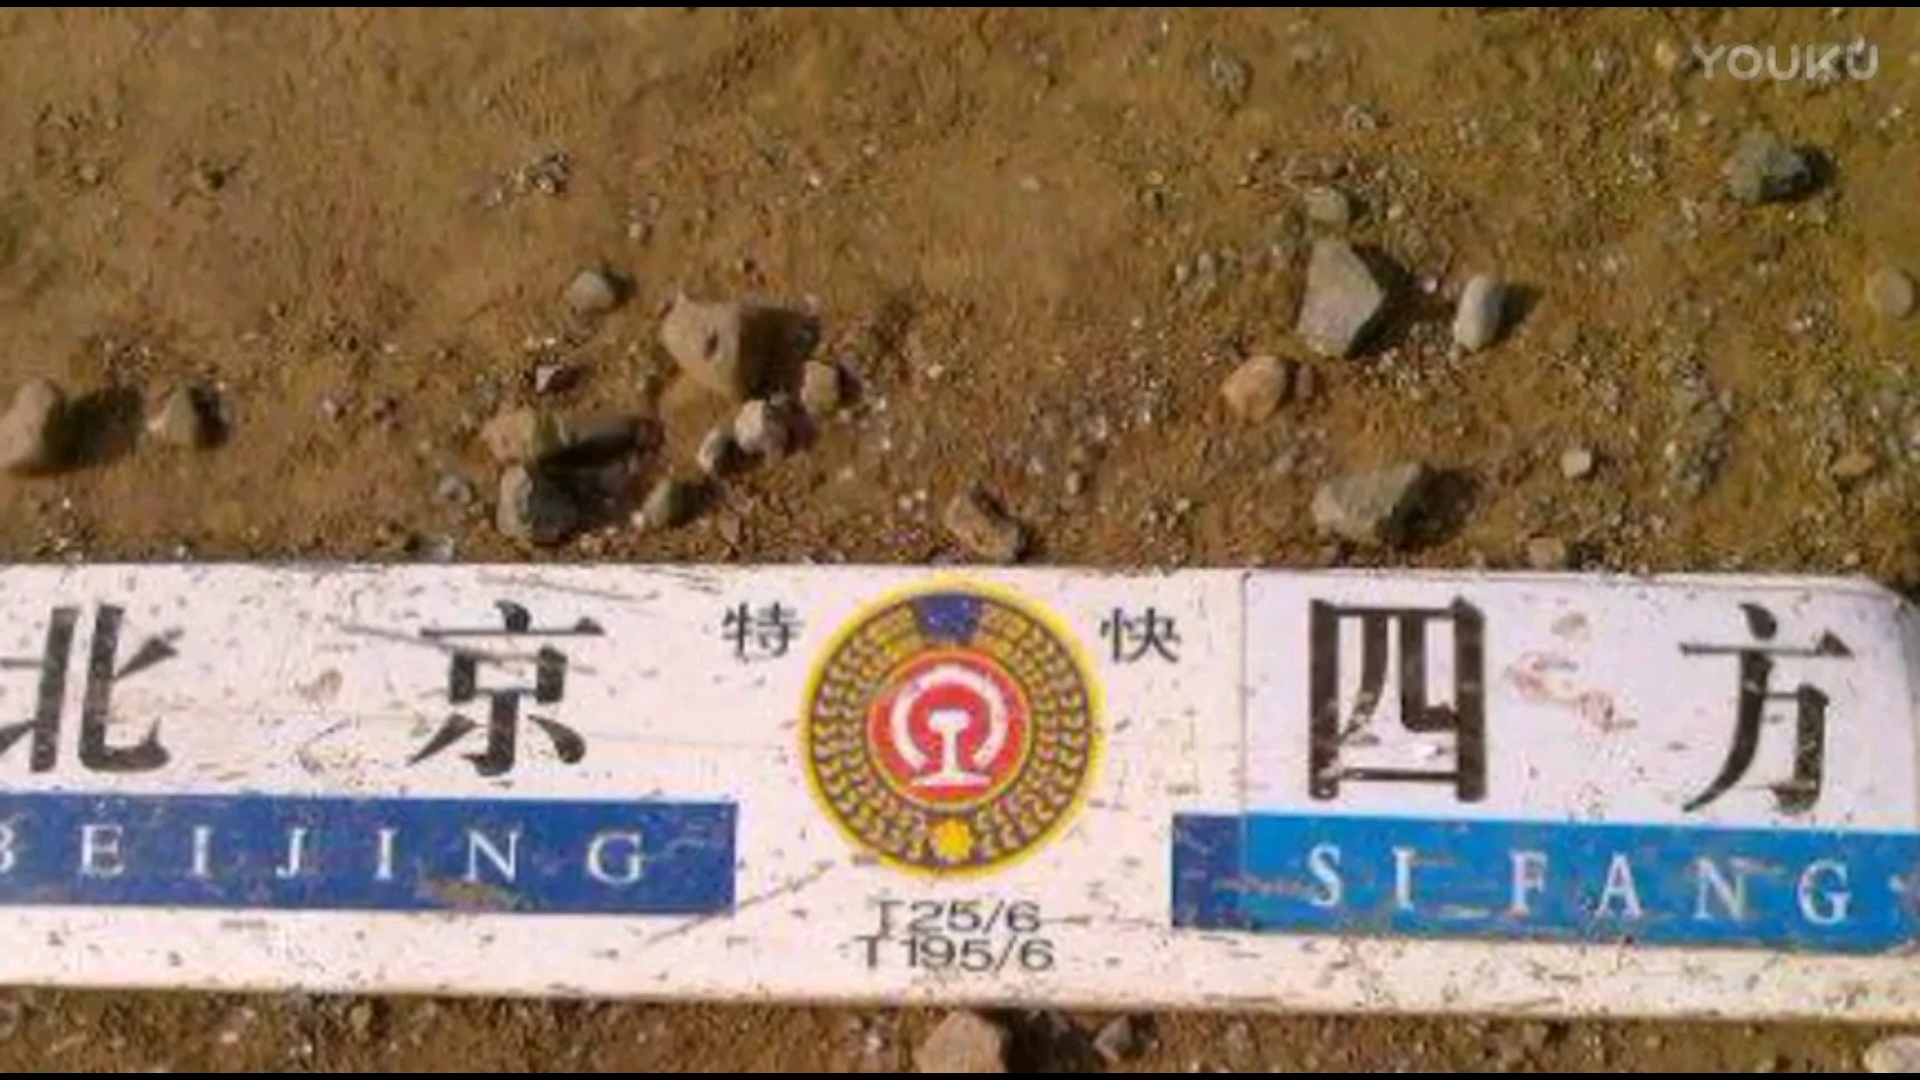 事故现场的水牌,现在t195/6次已经停运,t25/6次也不再是北京到青岛的